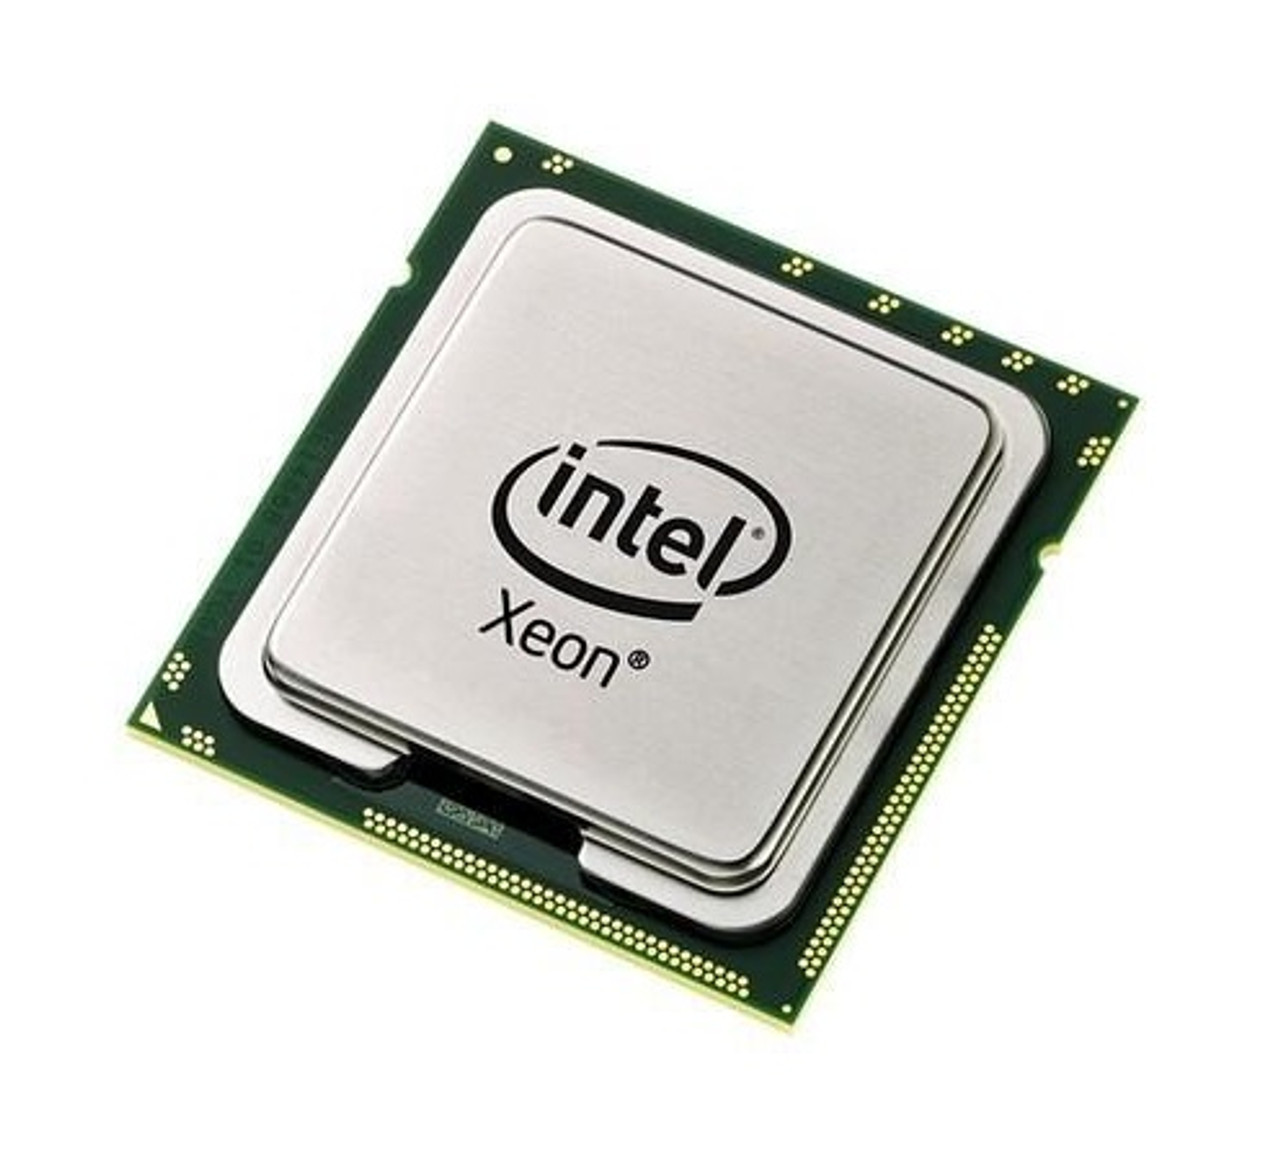 R600M - Dell Intel Xeon X5272 Dual Core 3.4GHz 6MB L2 Cache 1600MHz FSB Socket LGA771 45NM 80W Processor